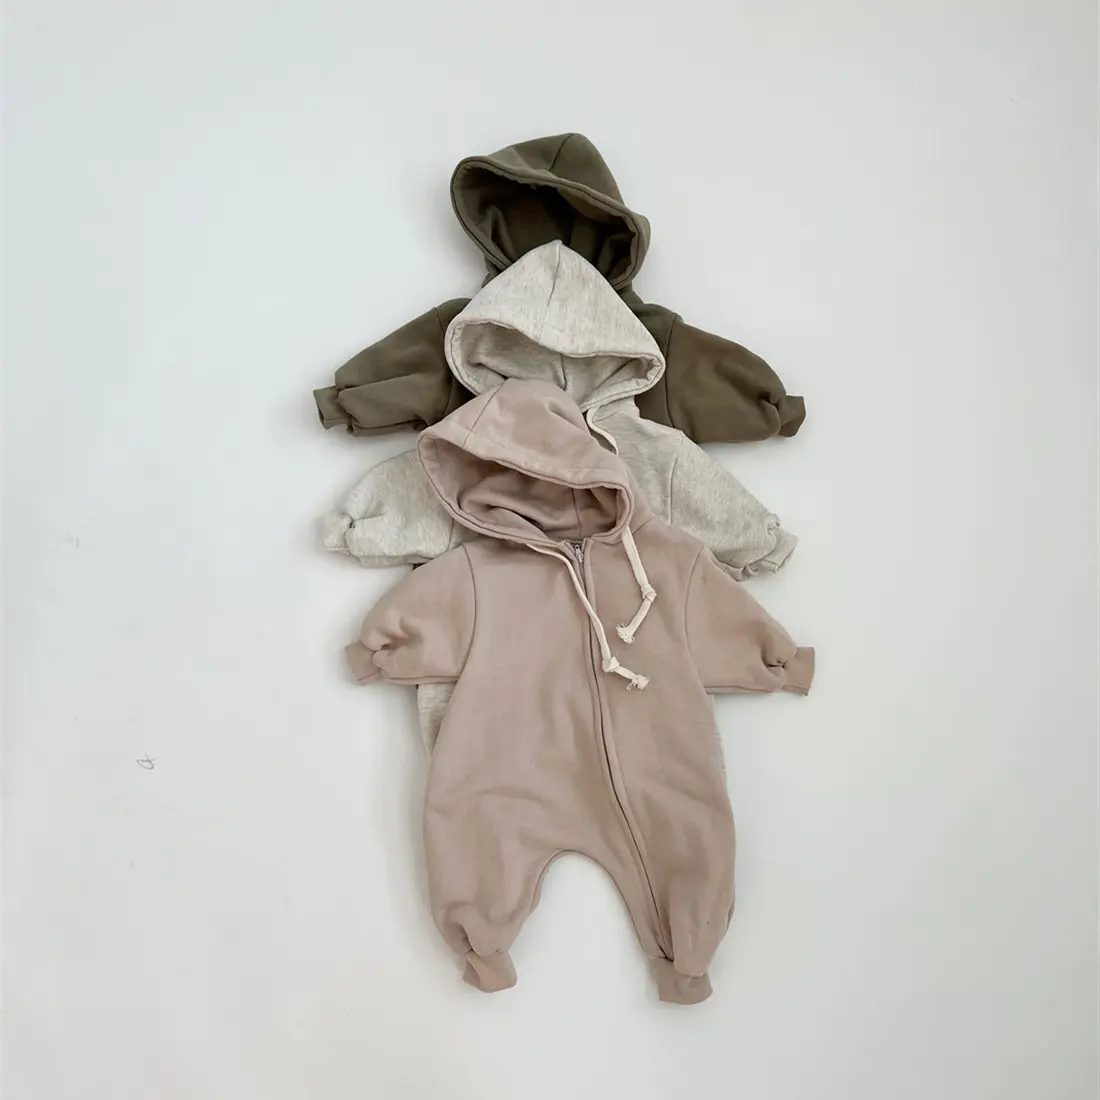 شعار مخصص الملابس المتضخم القلنسوة هوديس بذلة طفل طفل فقاعة رومبير القطن العضوي ملابس الطفل